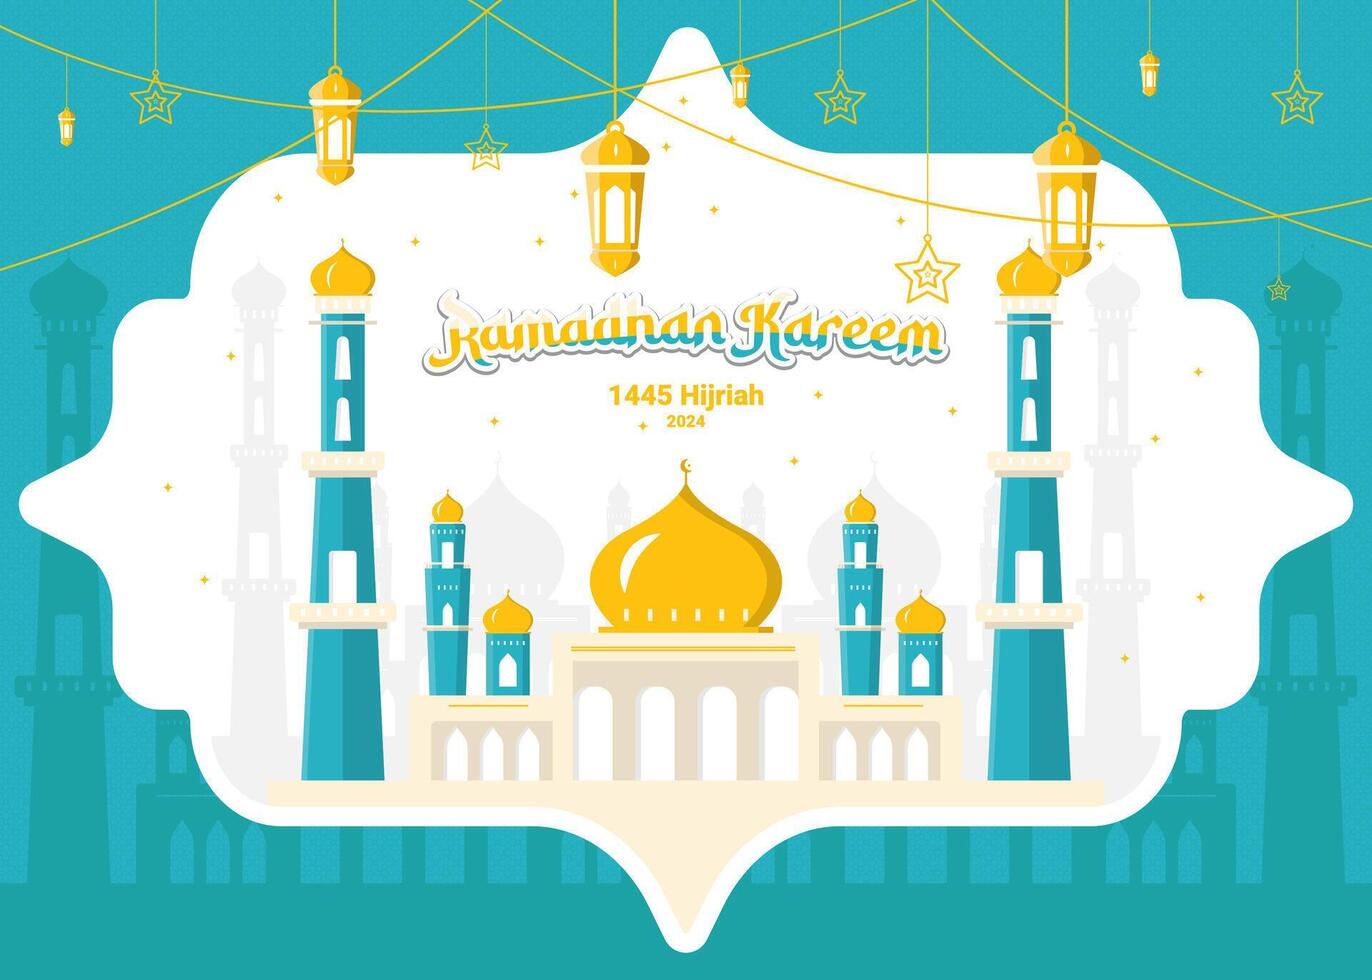 carte de voeux ramadan kareem vecteur